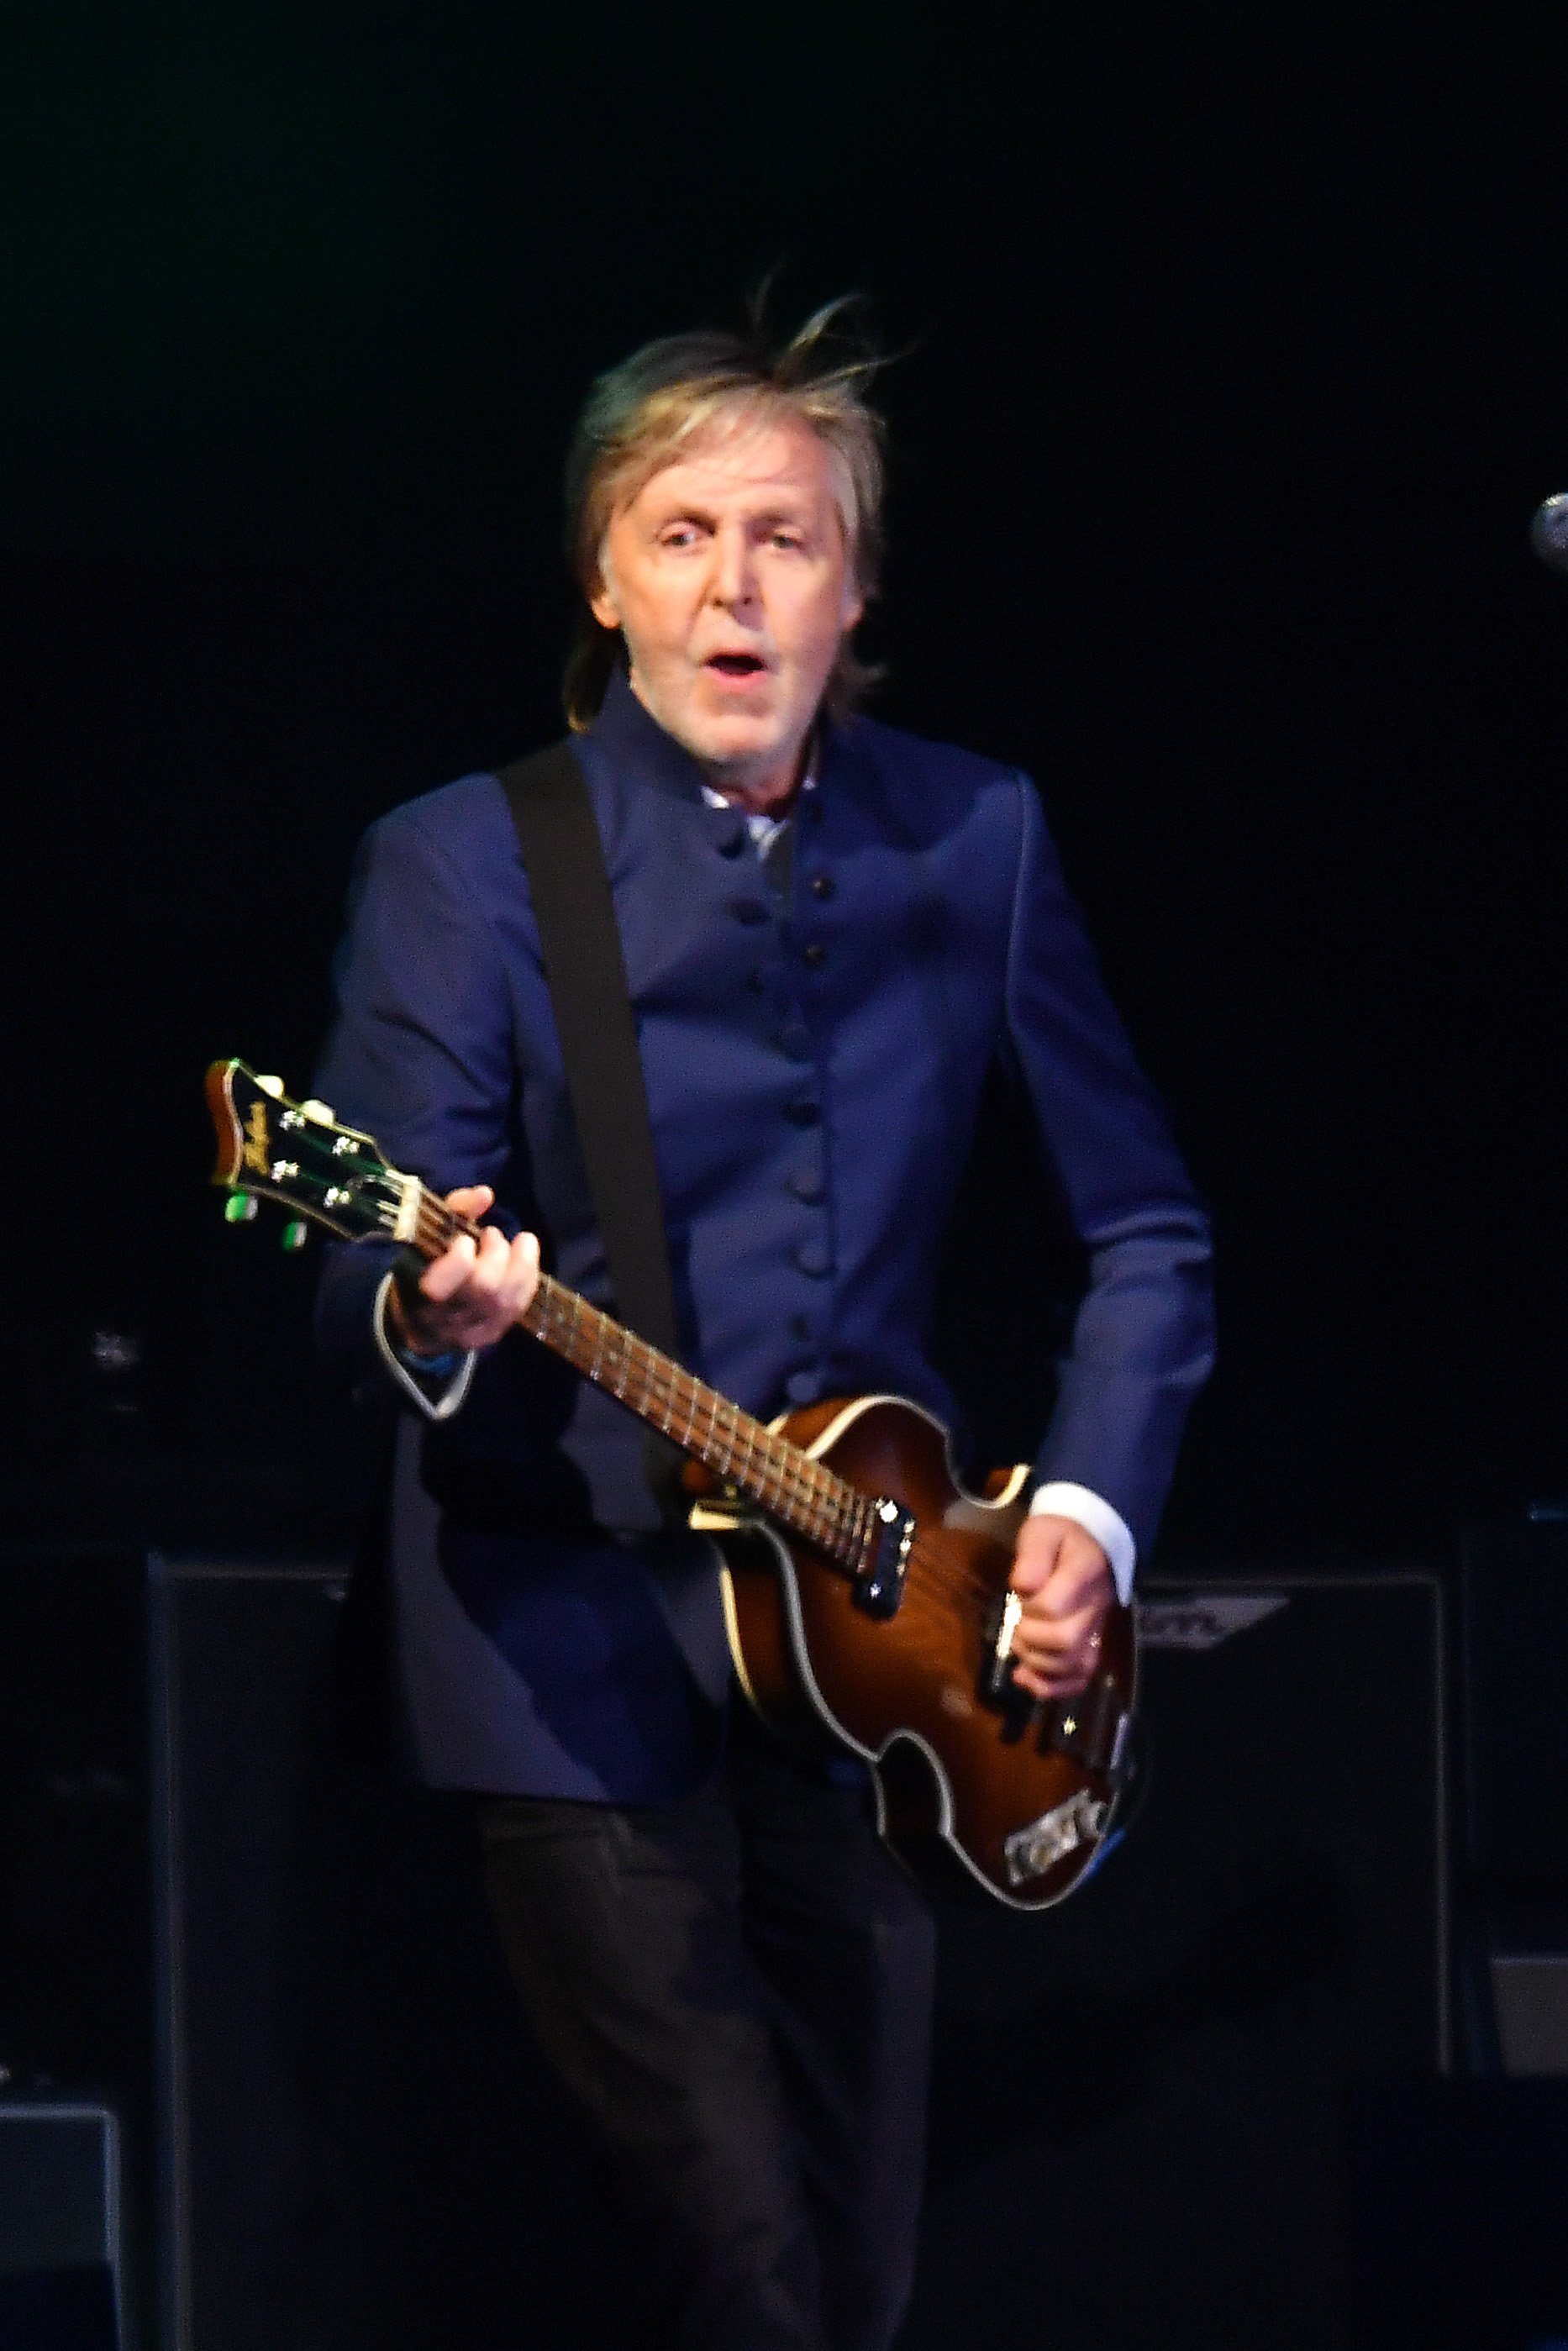 Paul McCartney en el escenario de un festival en Glastonbury, Inglaterra, 25 de junio de 2022. | Fuente: Getty Images